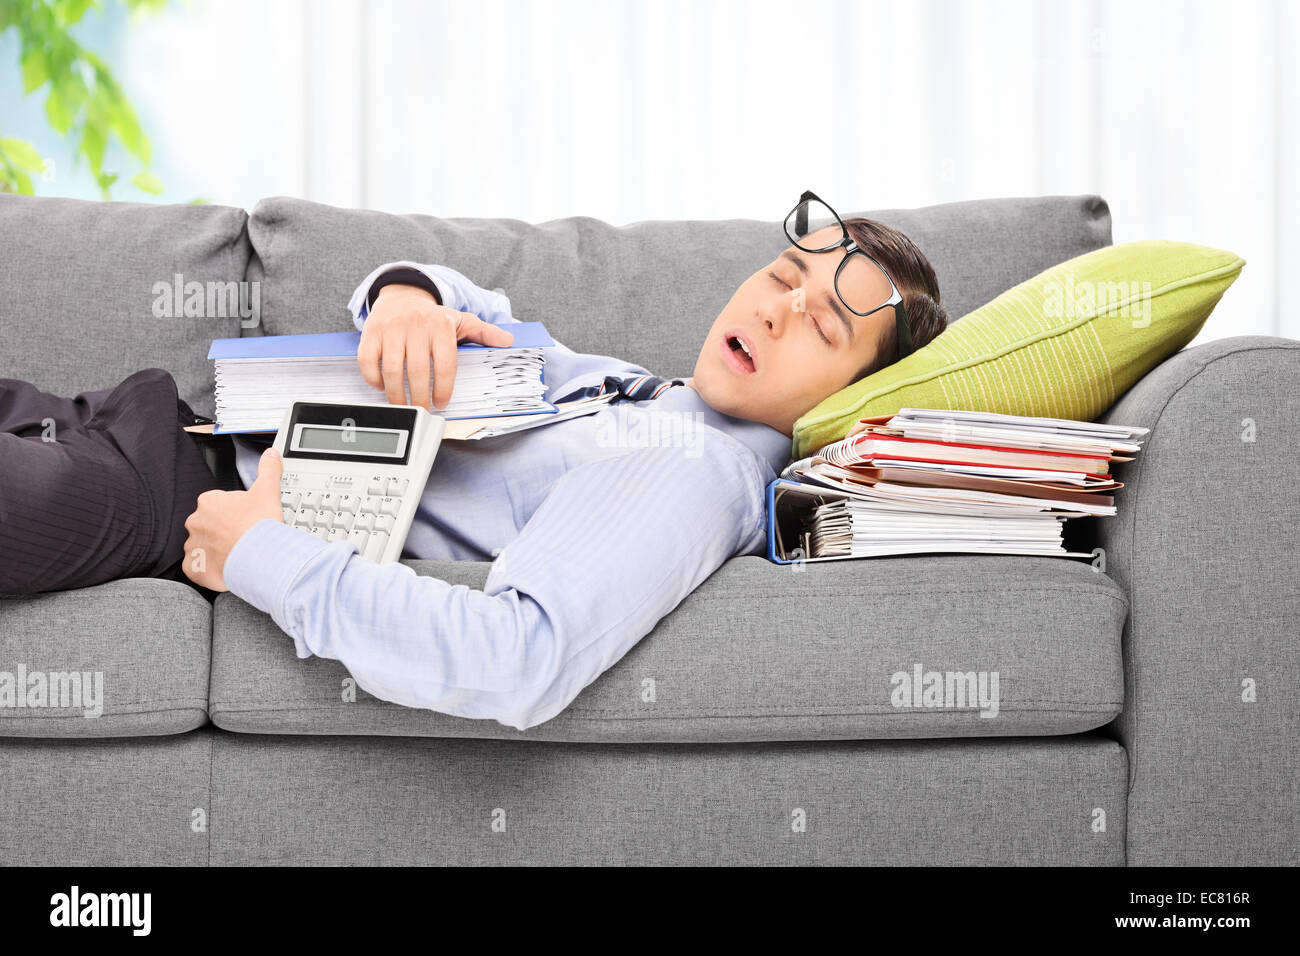 Employé fatigué de dormir sur un canapé dans un bureau sur un tas de documents Banque D'Images